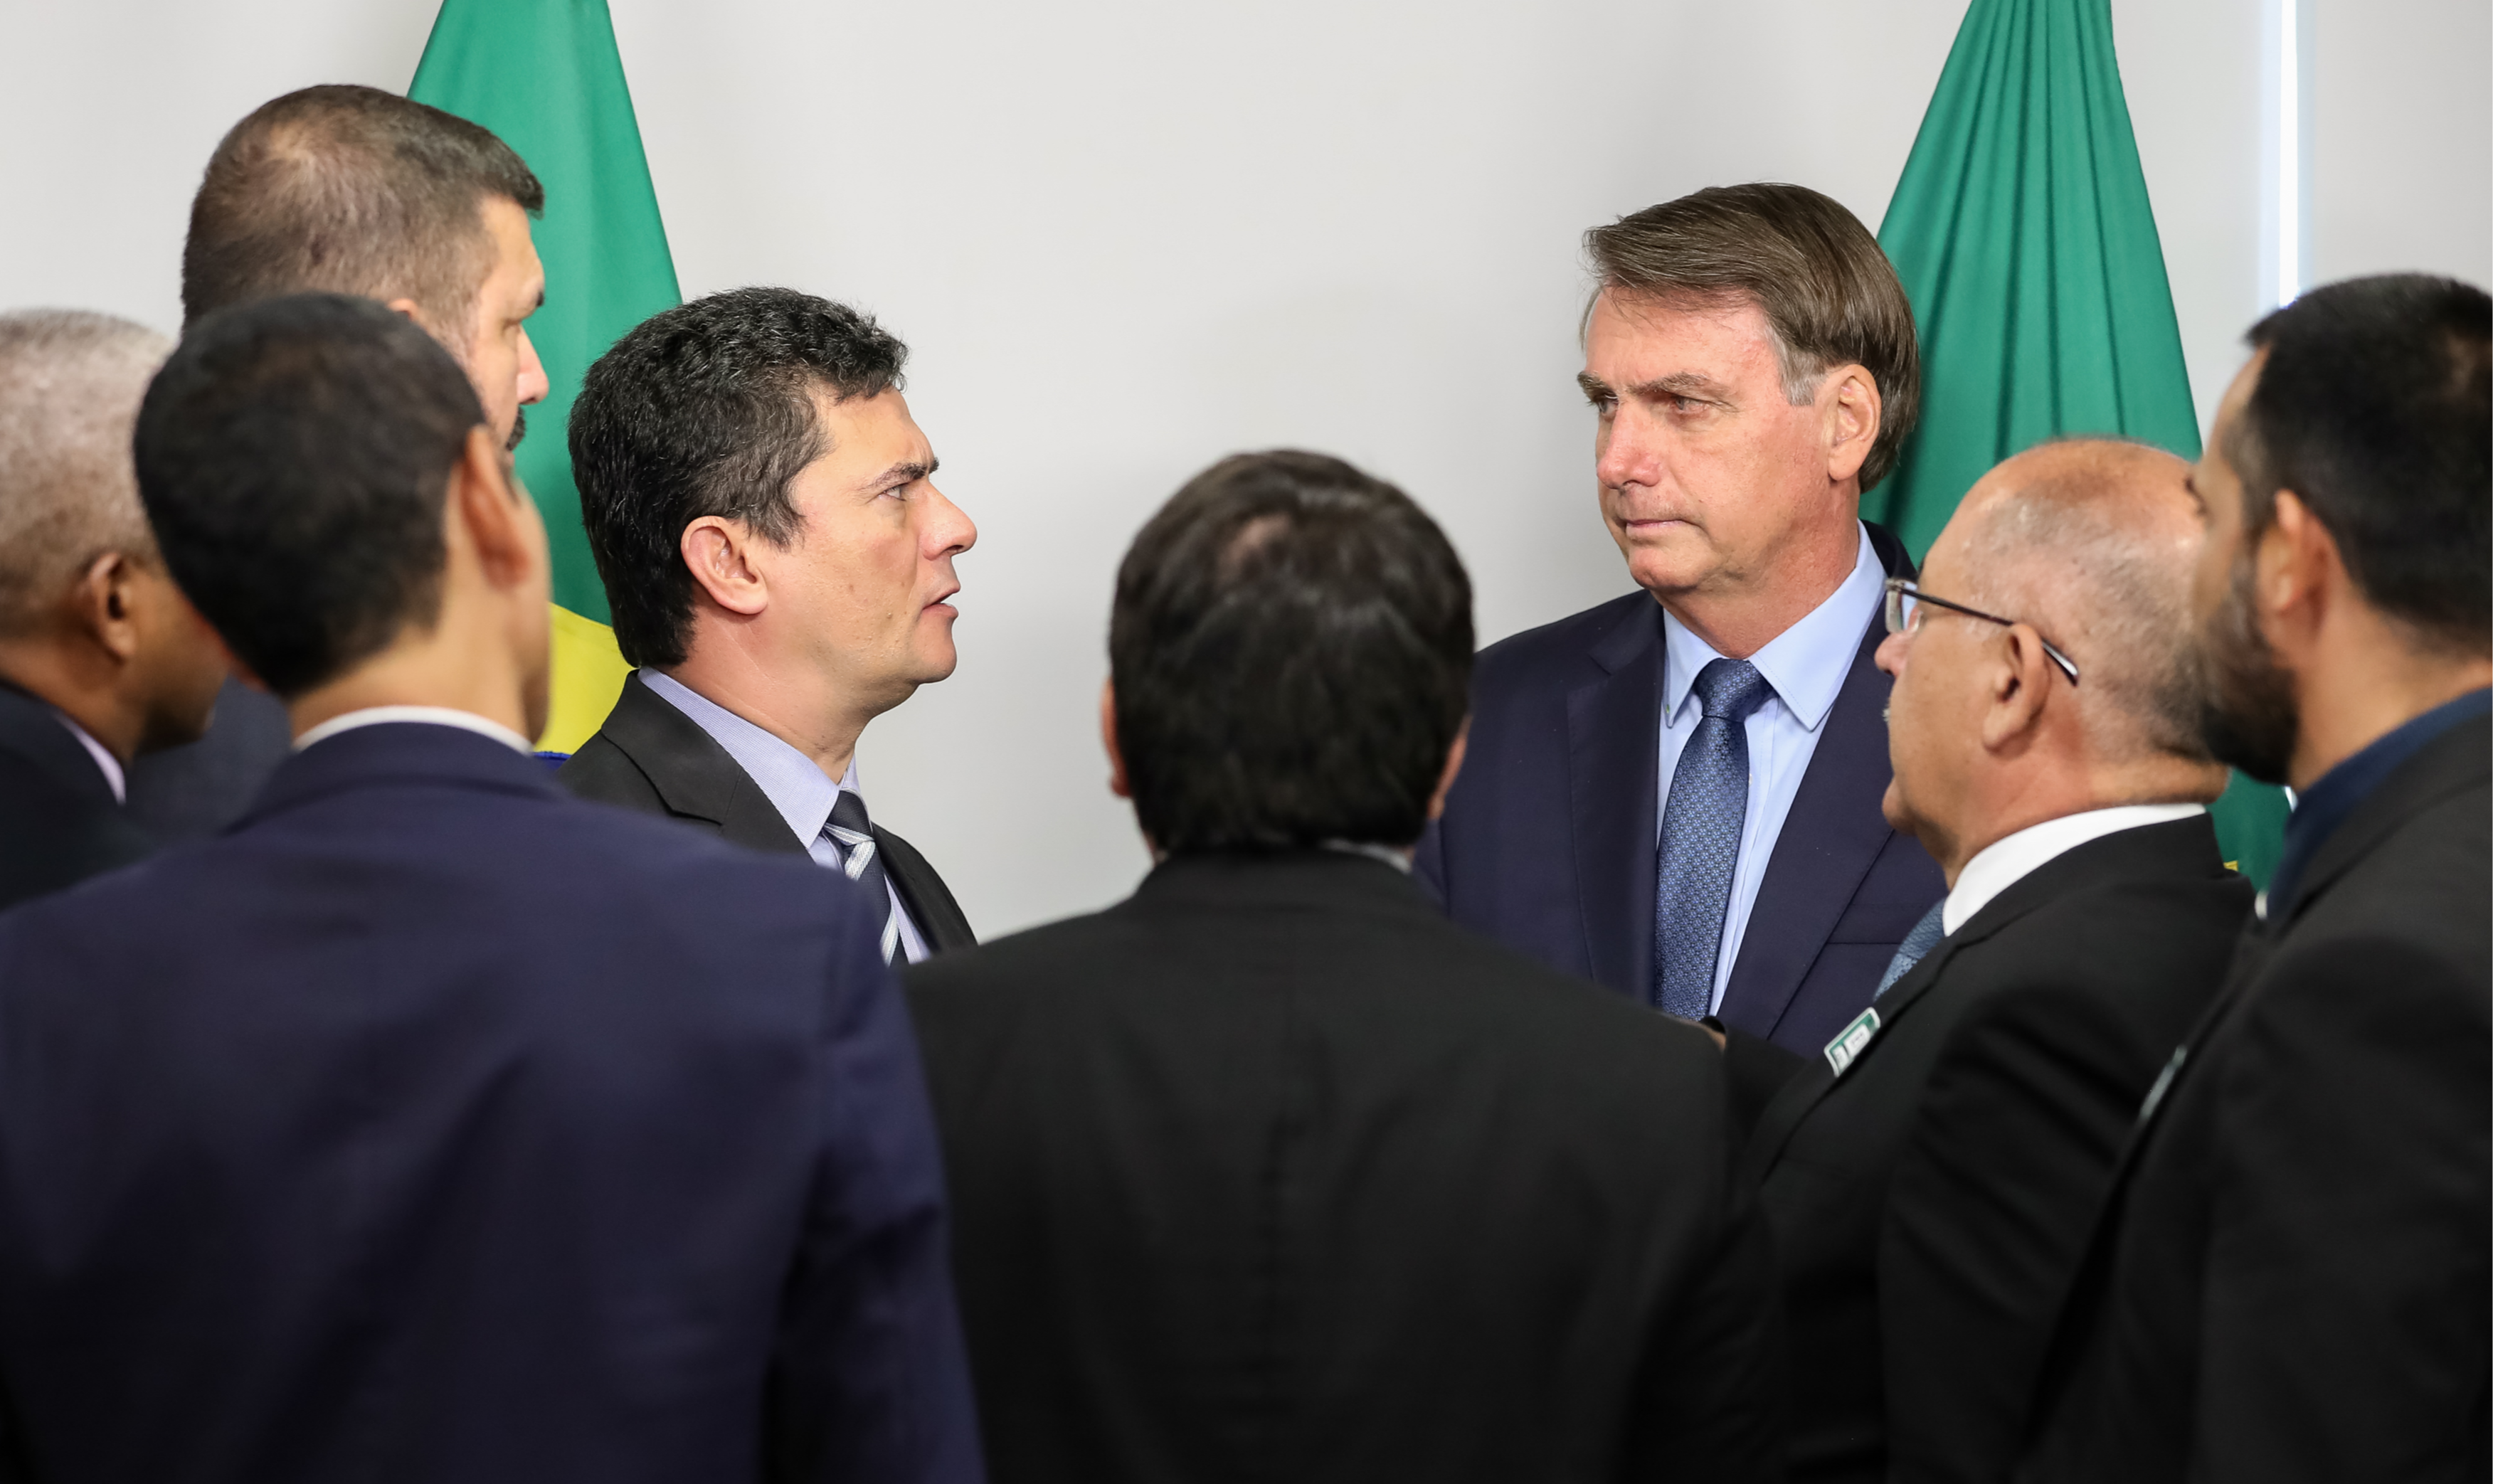 Cientista político adverte que o ex-juiz inaugurou o uso político da Justiça com a Lava Jato e se calou diante de ultrajes democráticos de Bolsonaro. “Faríamos bem ver a ironia”